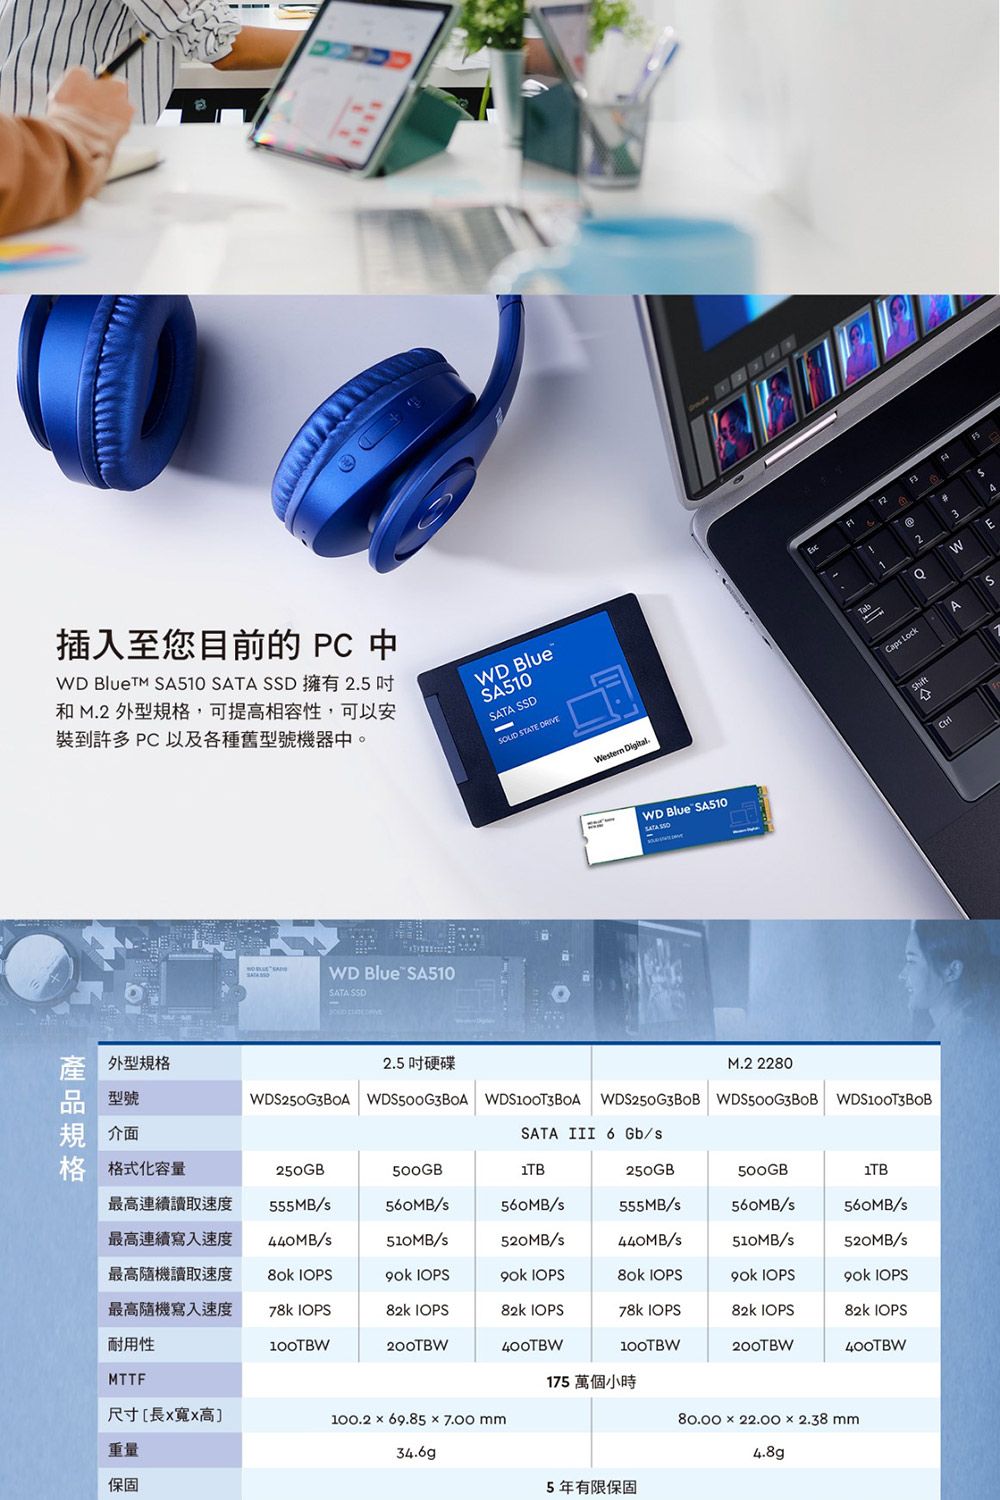 插入至您目前的  中WD  A510  SSD5和M.2 外型,可提高相容性,可以安裝到許多PC以及各種舊型號機器中。WD BlueSA510SATA SSD STATE WD Blue SA510SATA SSD TabWetern .123AWE LockASSATA WD Blue SA510規型號 外型規格WDS250G3B0A 2.5M.2 2280WDS250G3BOB 介面SATA III 6 Gb/格 格式化容量250GB500GB250GB500GB最高連續讀取速度最高連續寫入速度555MB/440MB/560MB/560MB/555MB/560MB/560MB/510MB/520MB/s440MB/s510MB/s520MB/s最高隨機讀取速度最高隨機寫入速度 IOPS IOPS IOPS IOPS IOPS IOPS78k IOPS82k IOPS82k IOPS78k IOPS82k IOPS82k IOPS耐用性100TBW200TBW400TBW100TBW200TBW400TBWMTTF175 萬個小時尺寸[長寬高100.2  69.85  7.00 mm80.00 x 22.00 x 2.38 mm重量34.6g4.8g保固5年有限保固